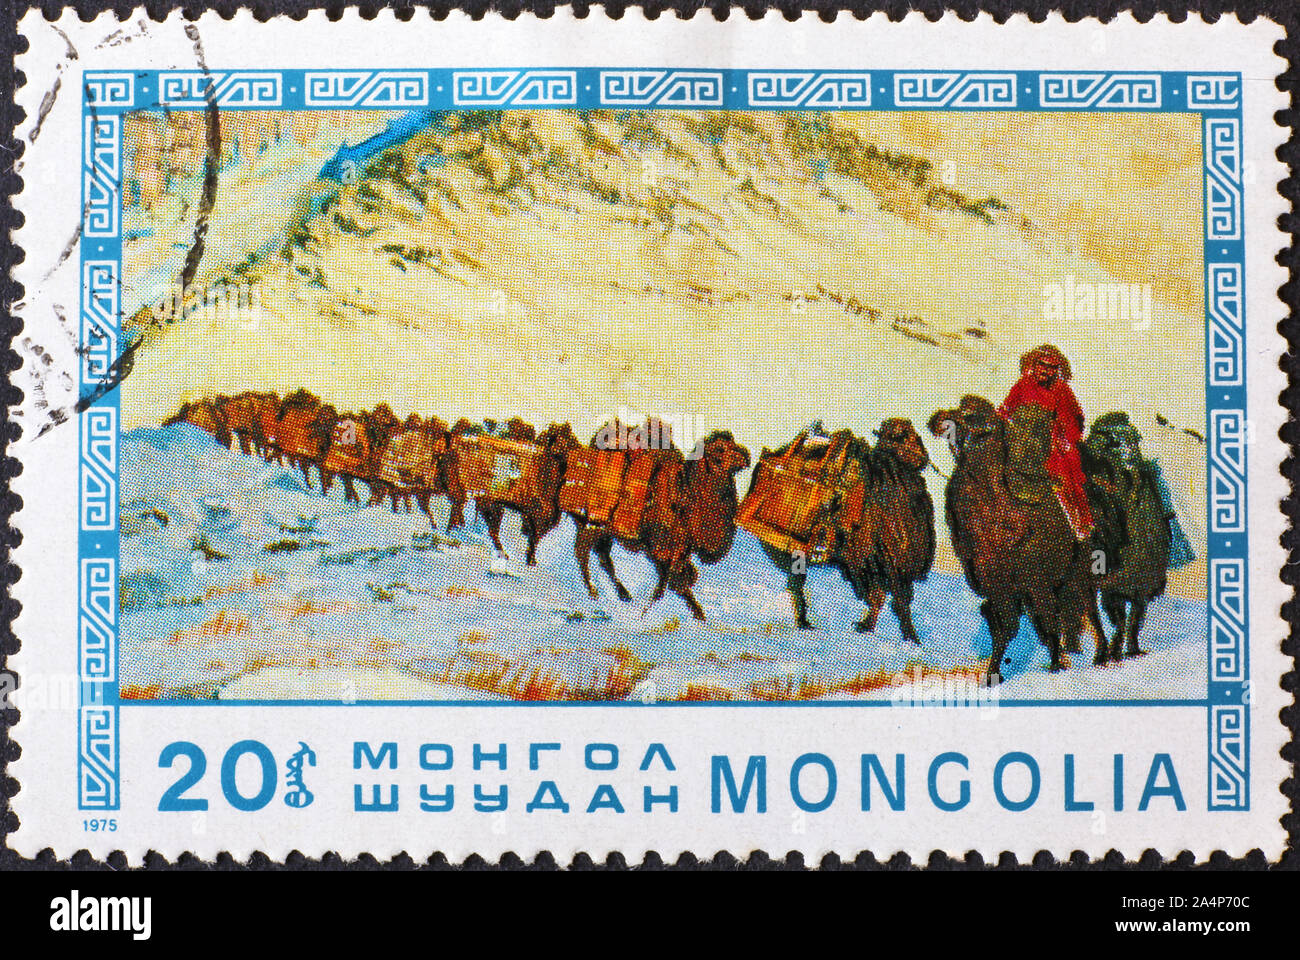 Caravane de chameaux sur timbres de Mongolie Banque D'Images